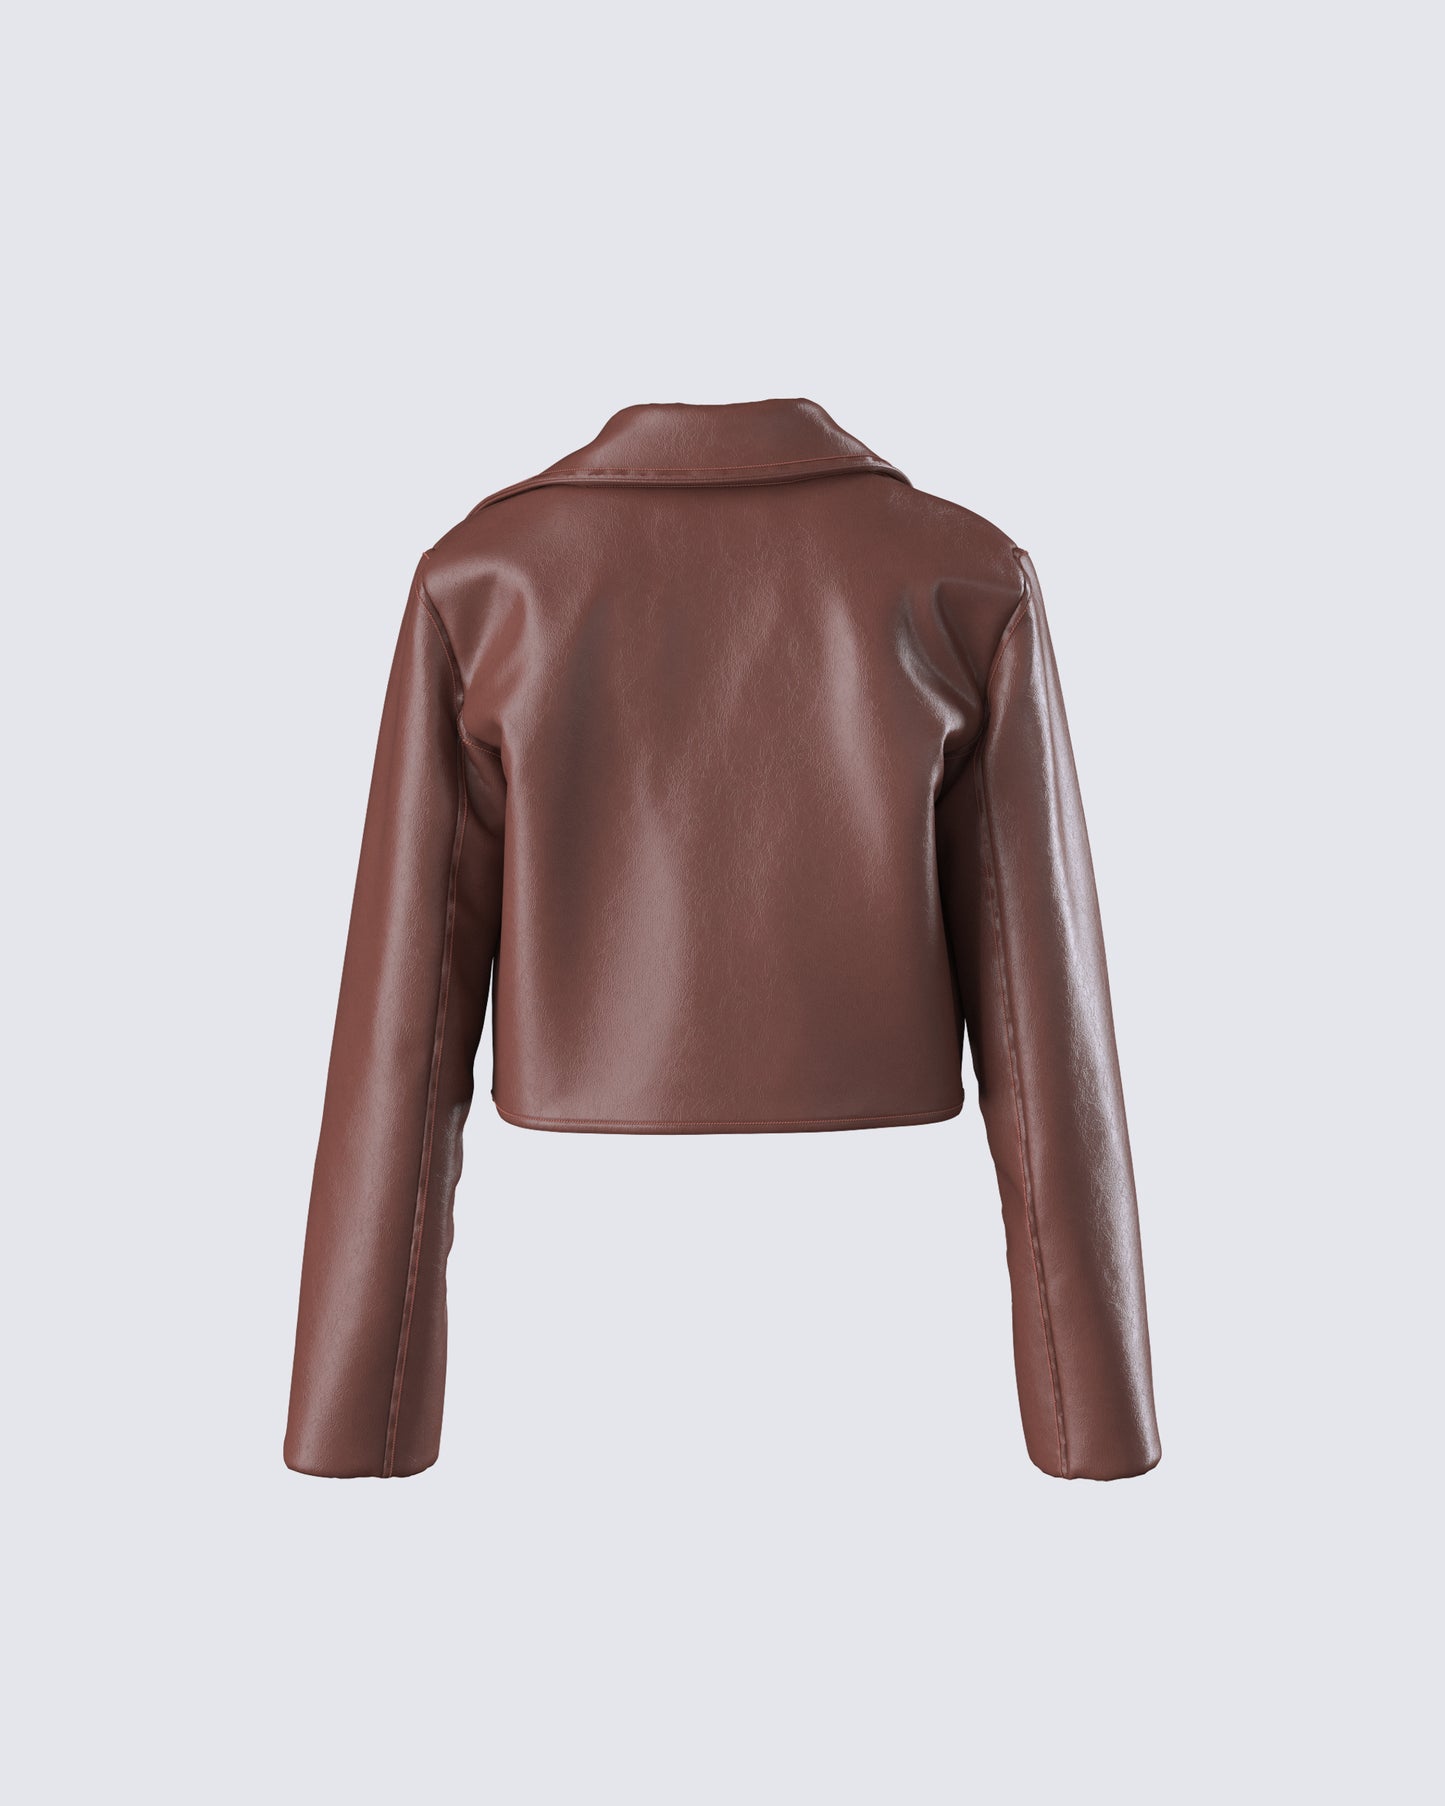 Donny Brown Vegan Leather Jacket